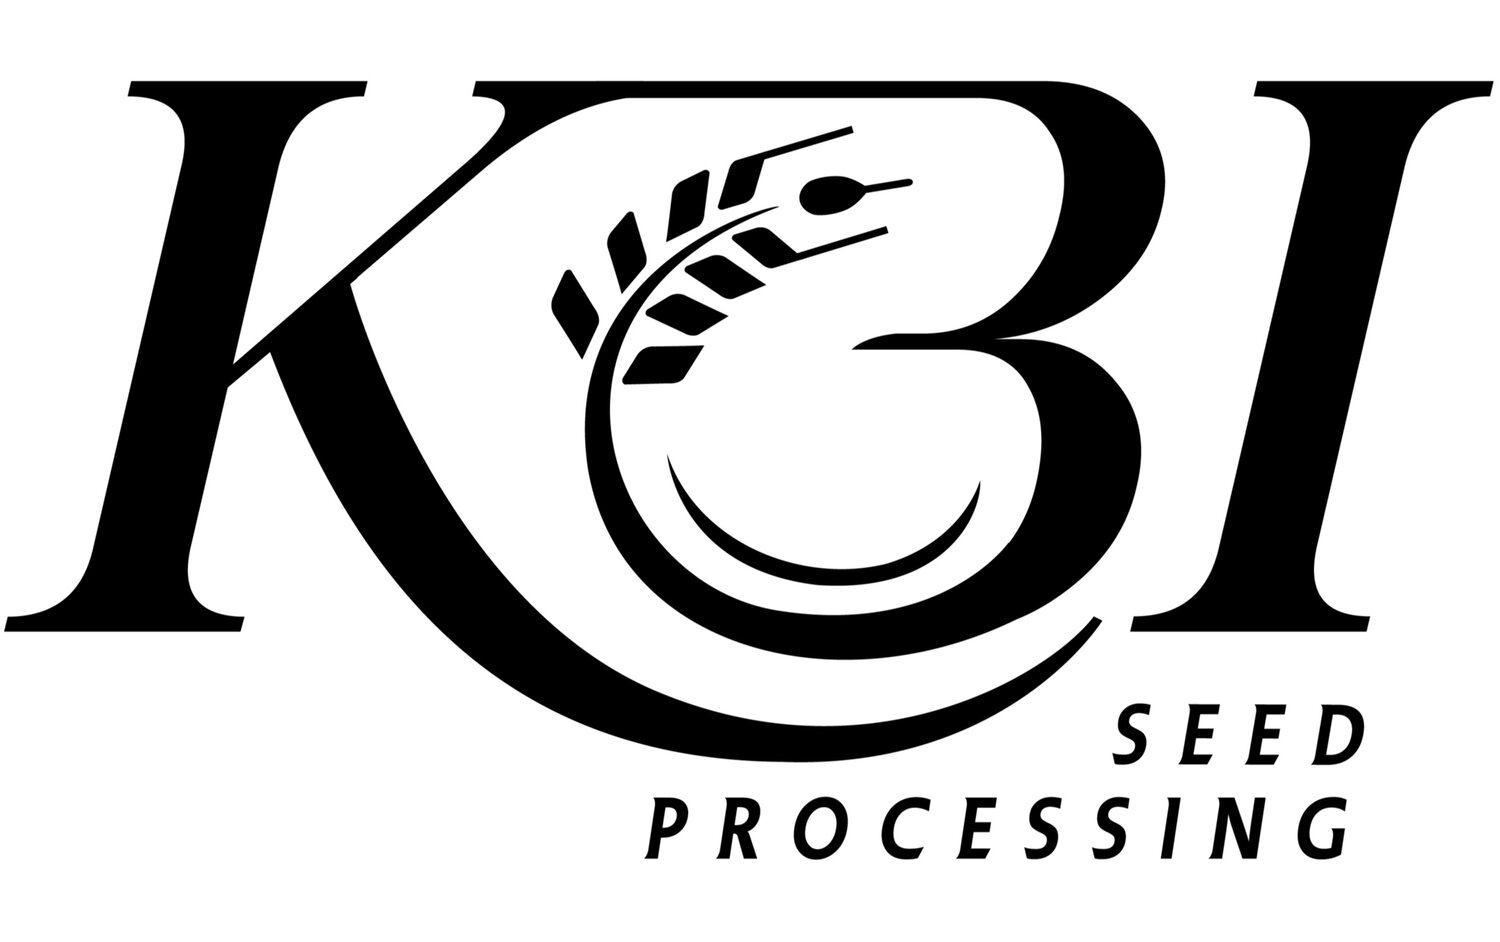 KBI Seed Processing